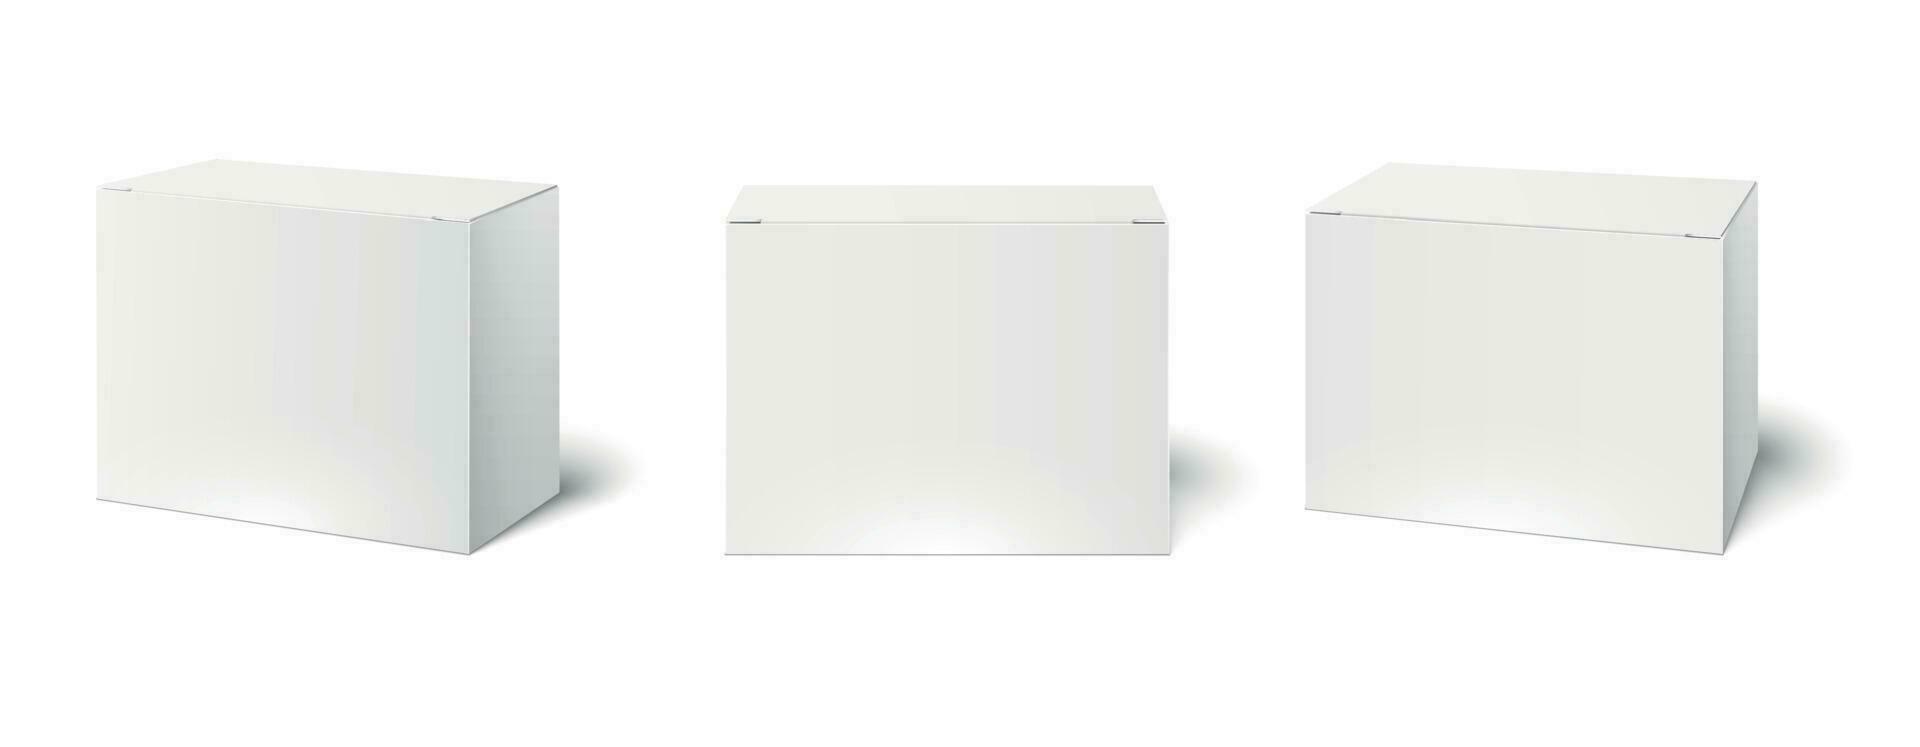 blanco caja Bosquejo. blanco embalaje cajas, cubo perspectiva ver y productos cosméticos producto paquete maquetas 3d vector ilustración conjunto